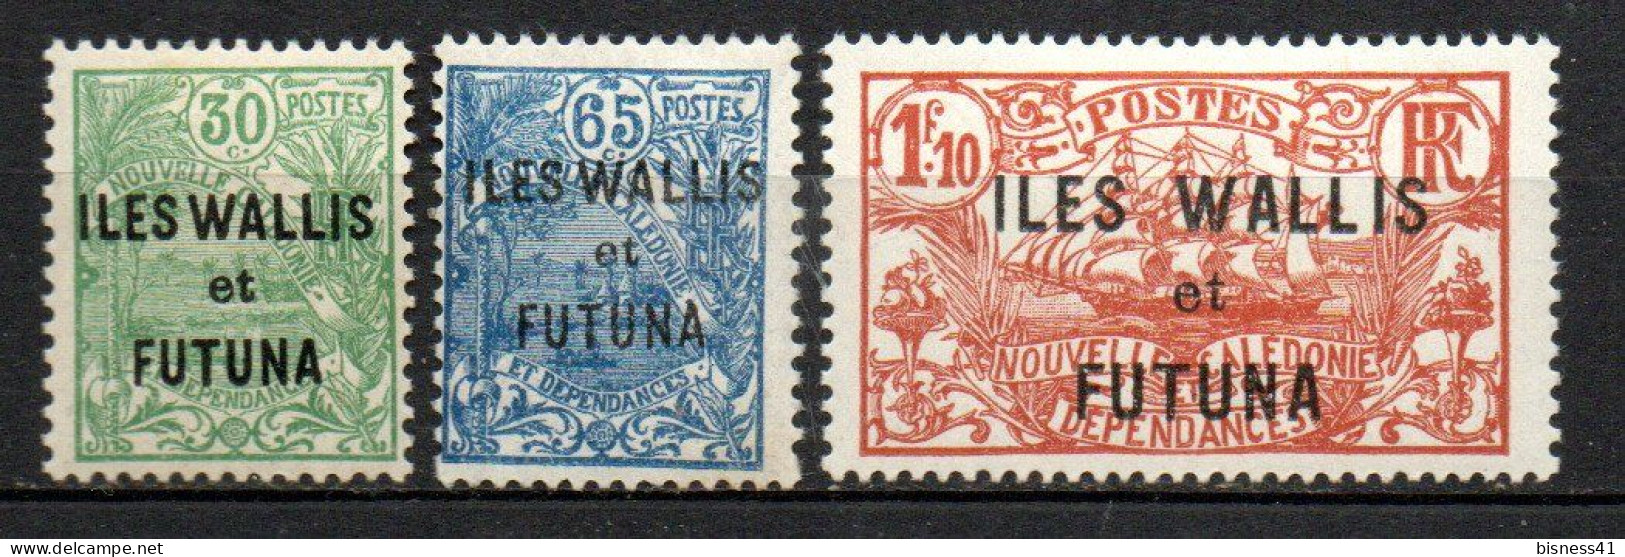 Col33 Colonie Wallis & Futuna N° 40 à 42 Neuf X MH Cote : 17,00€ - Ungebraucht